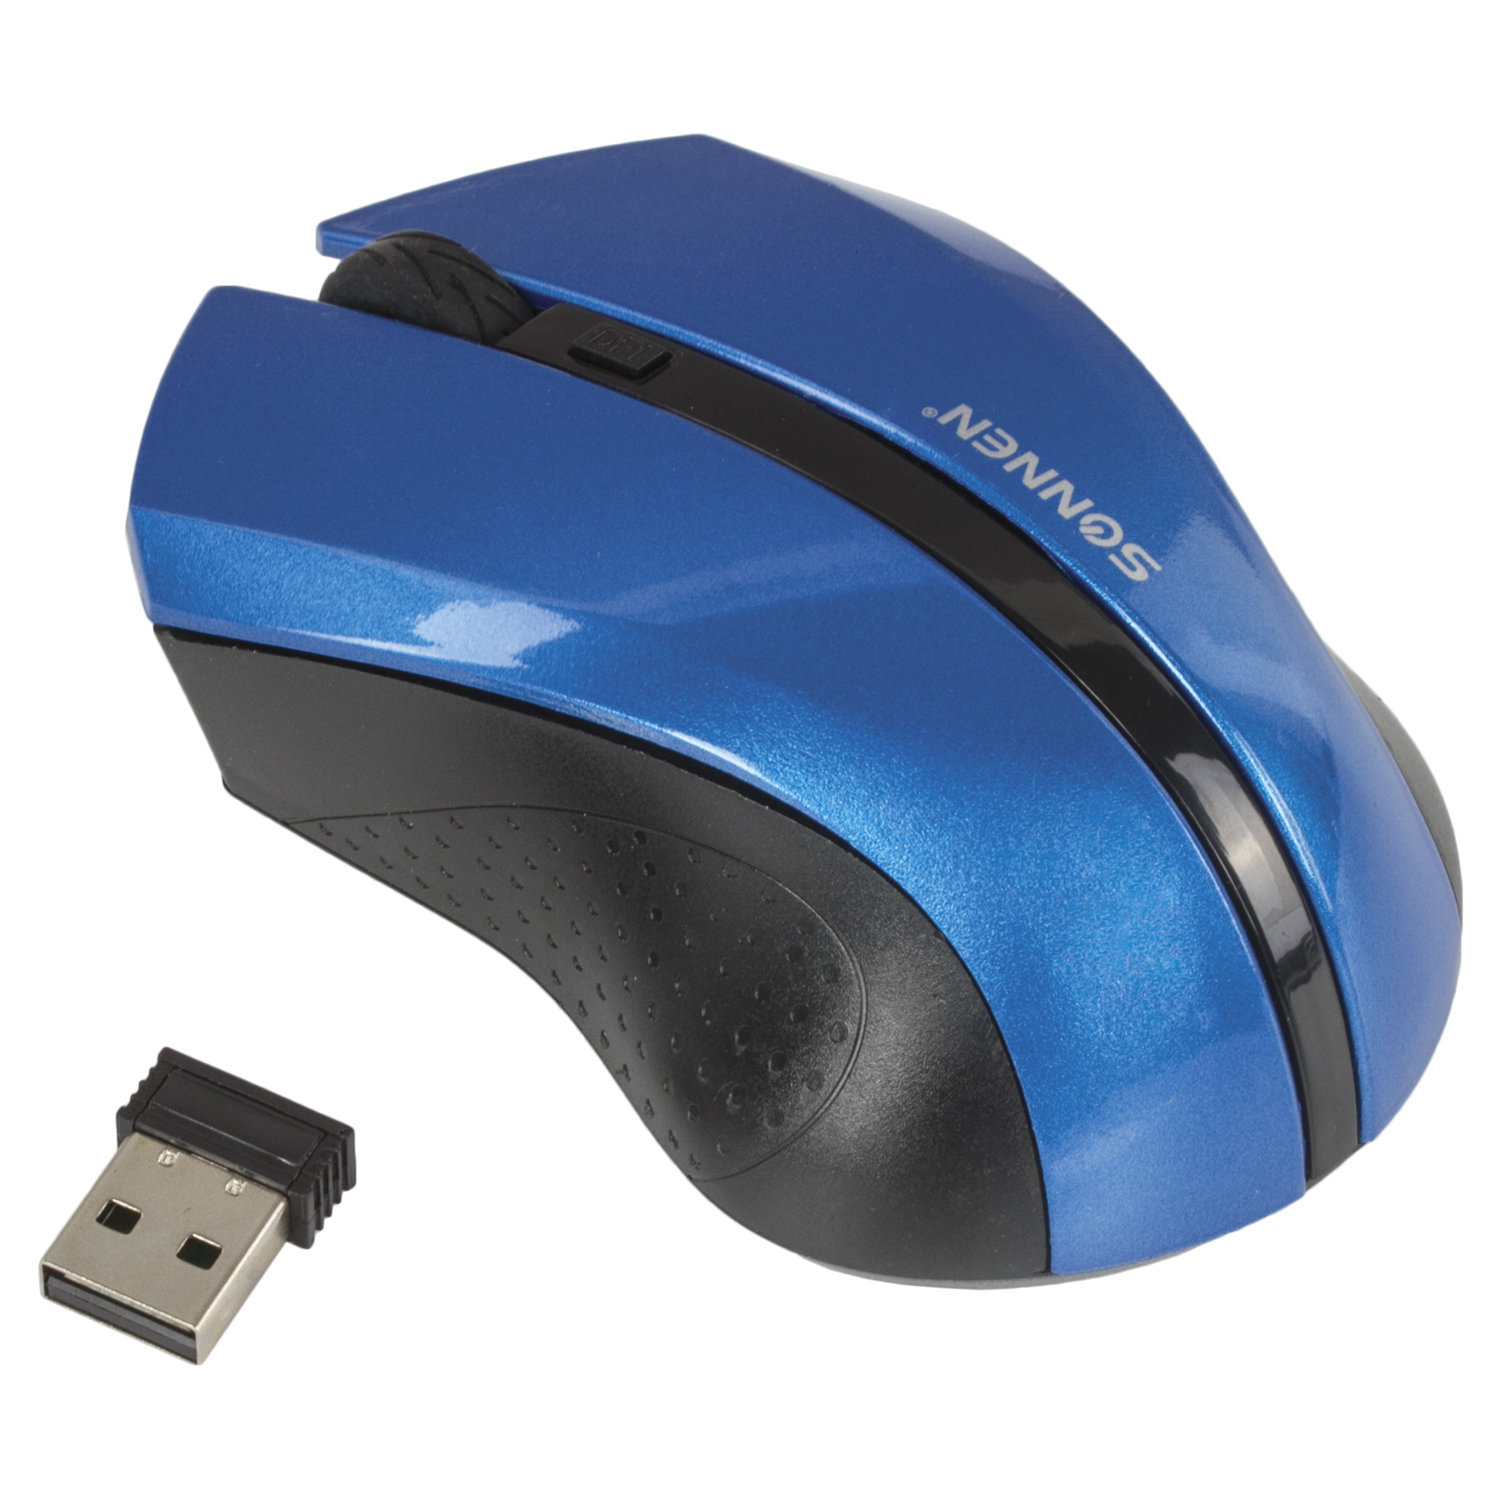 Мышь беспроводная SONNEN WM-250Bl, USB, 1600 dpi, 3 кнопки + 1 колесо-кнопка, оптическая, синяя, 512644 купите по выгодной цене